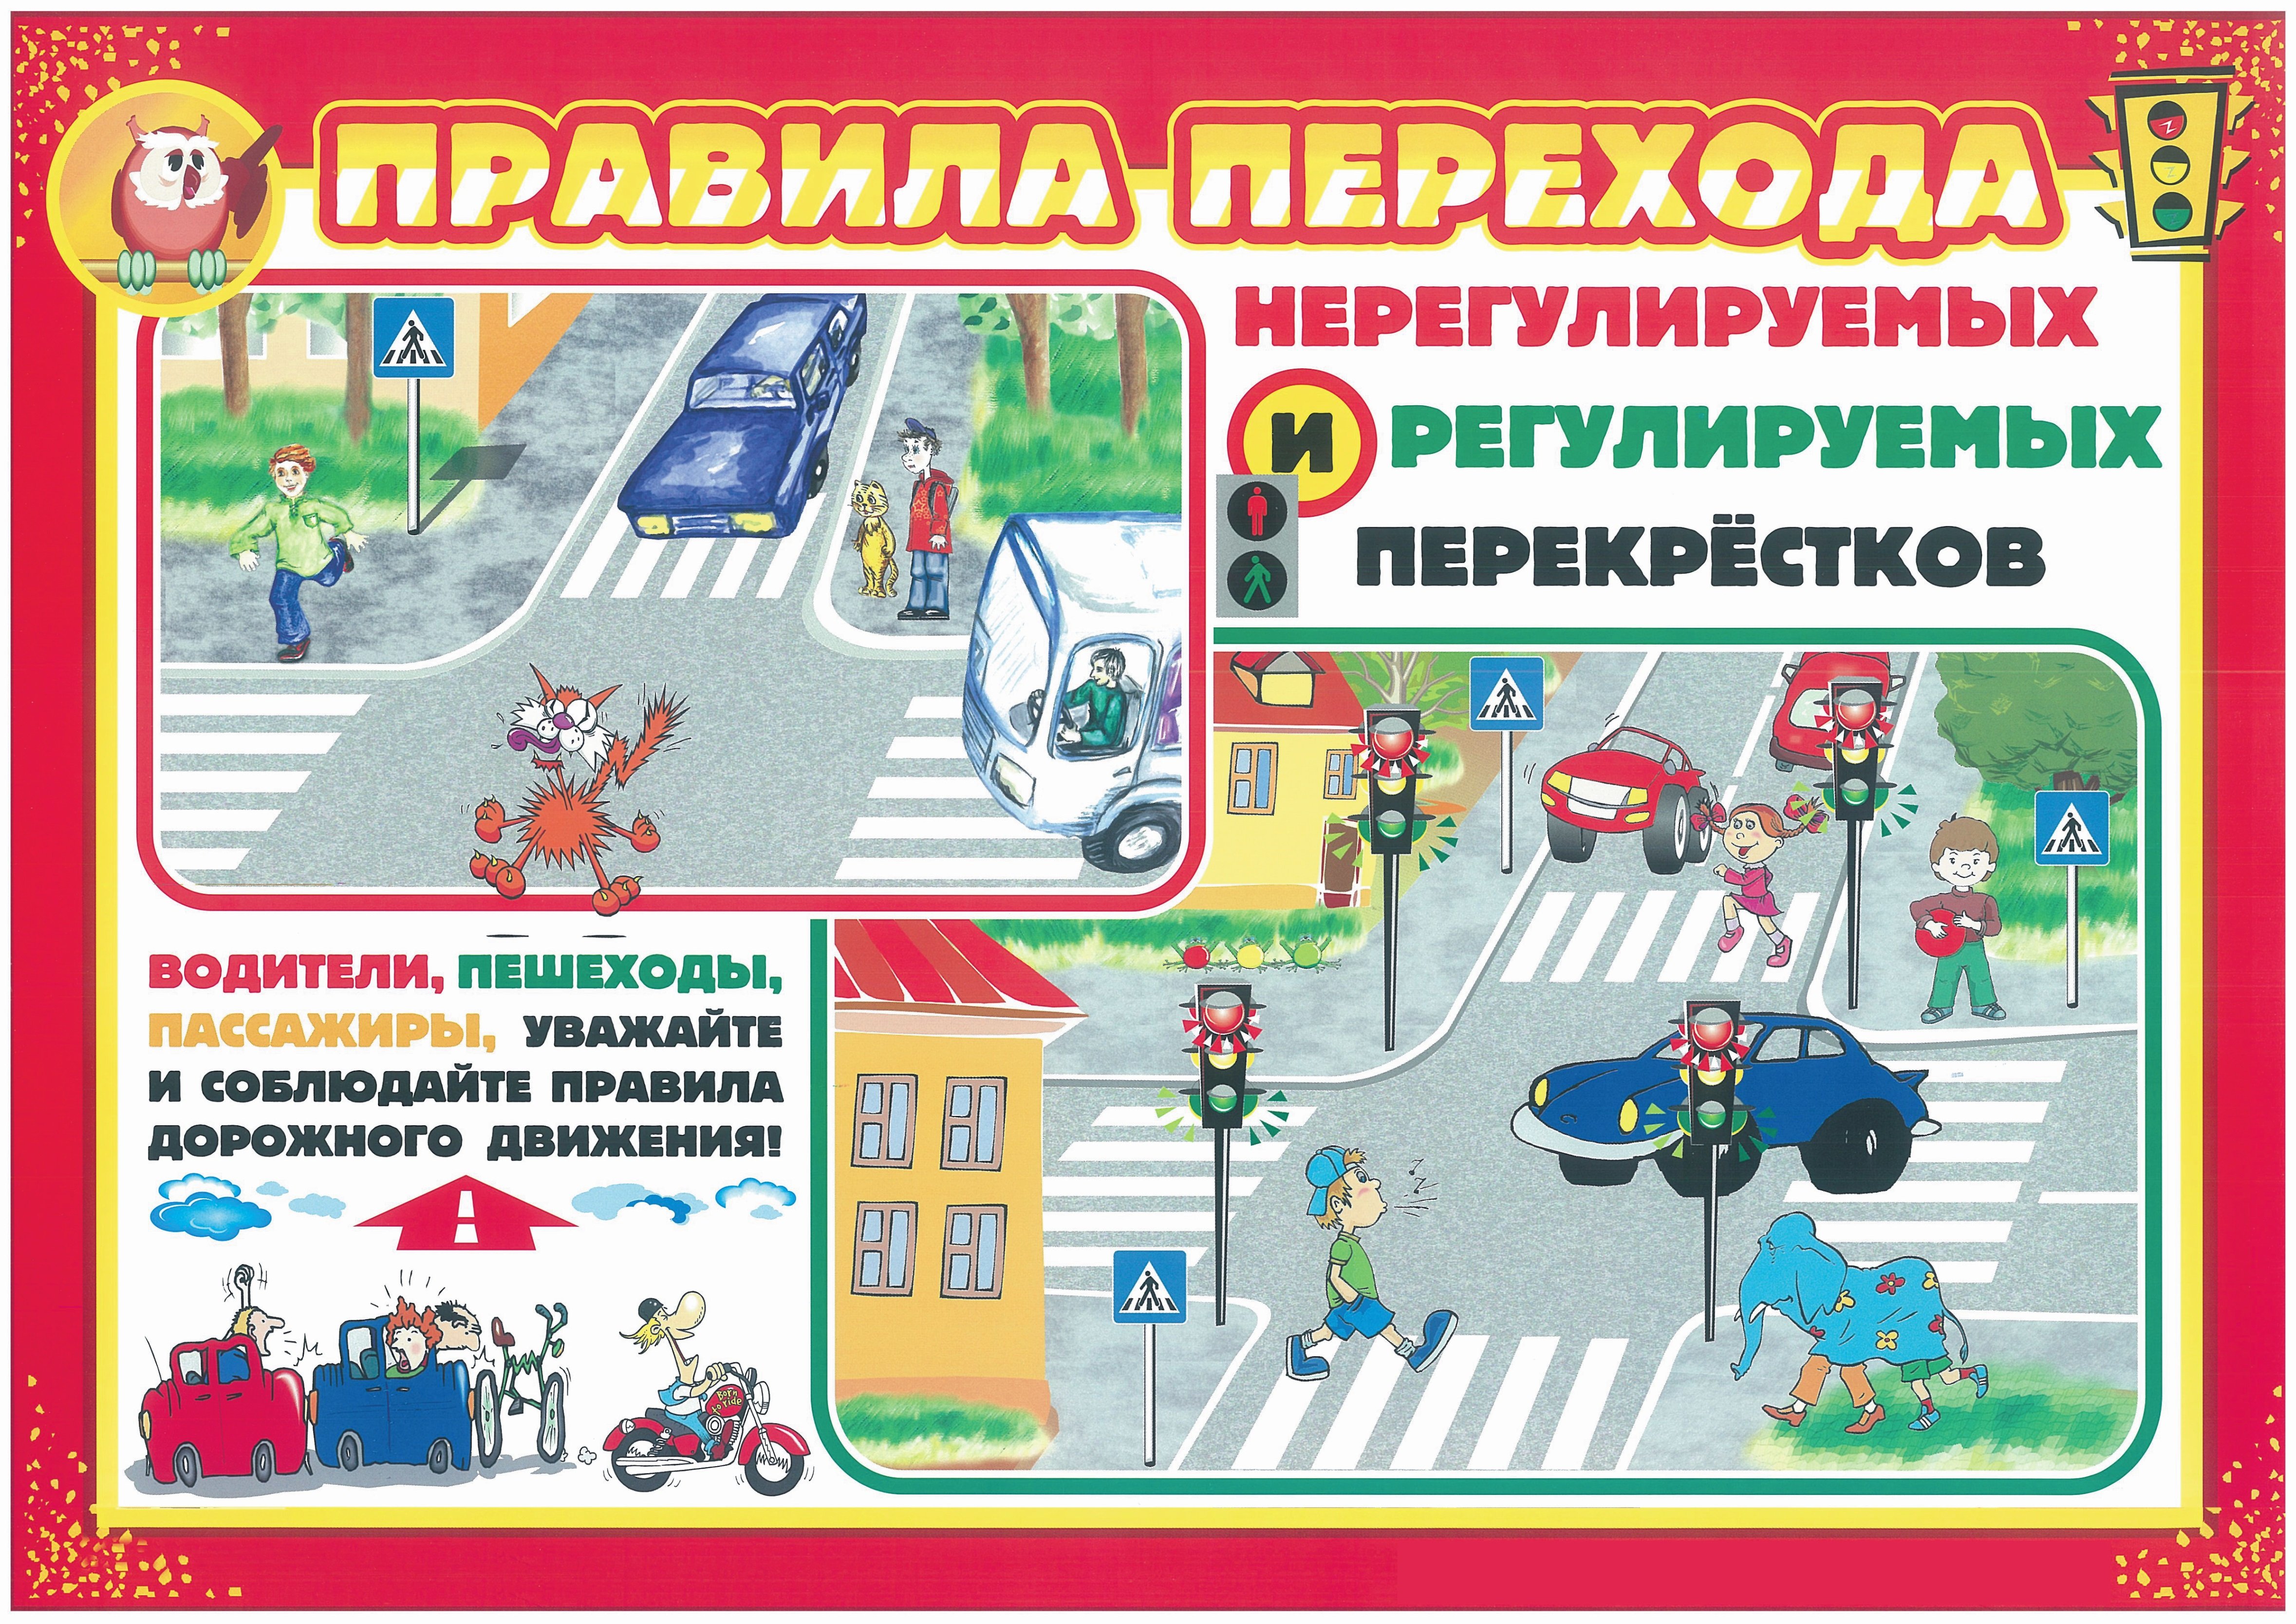 Скачай безопасности дороги. Правила дорожного движения. Правила дорожного движения для детей. Безопасность на дороге для дошкольников. Плакат по правилам дорожного движения.